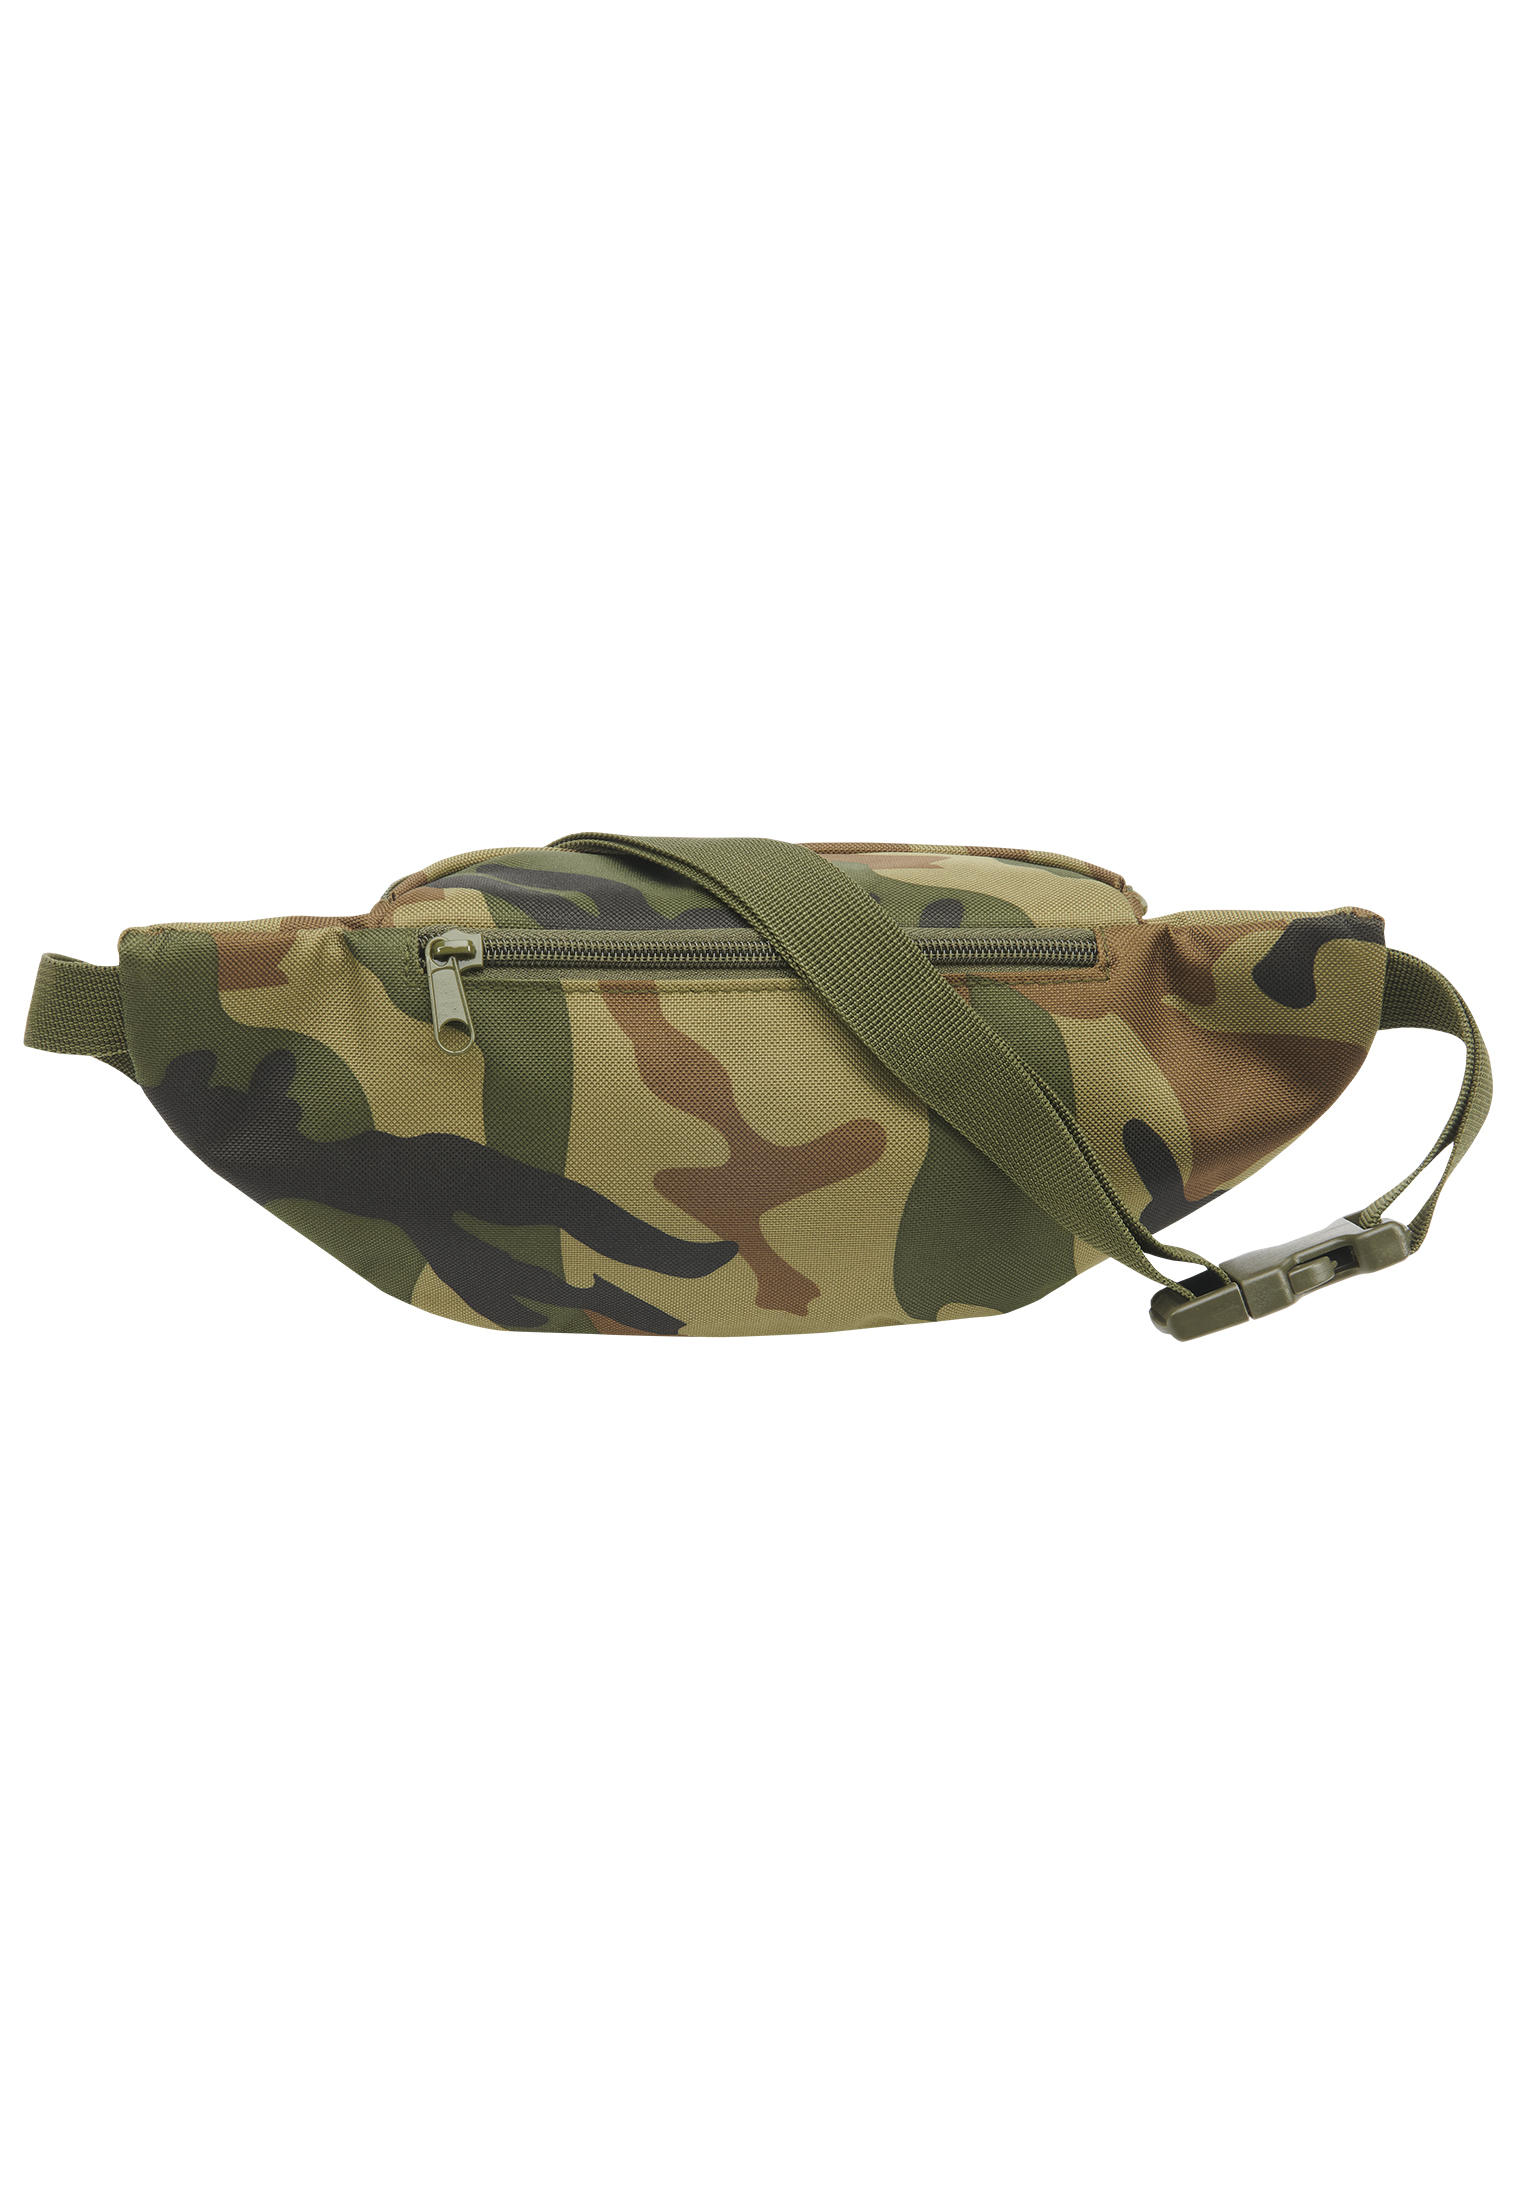 Taschen Pocket Hip Bag in Farbe woodland